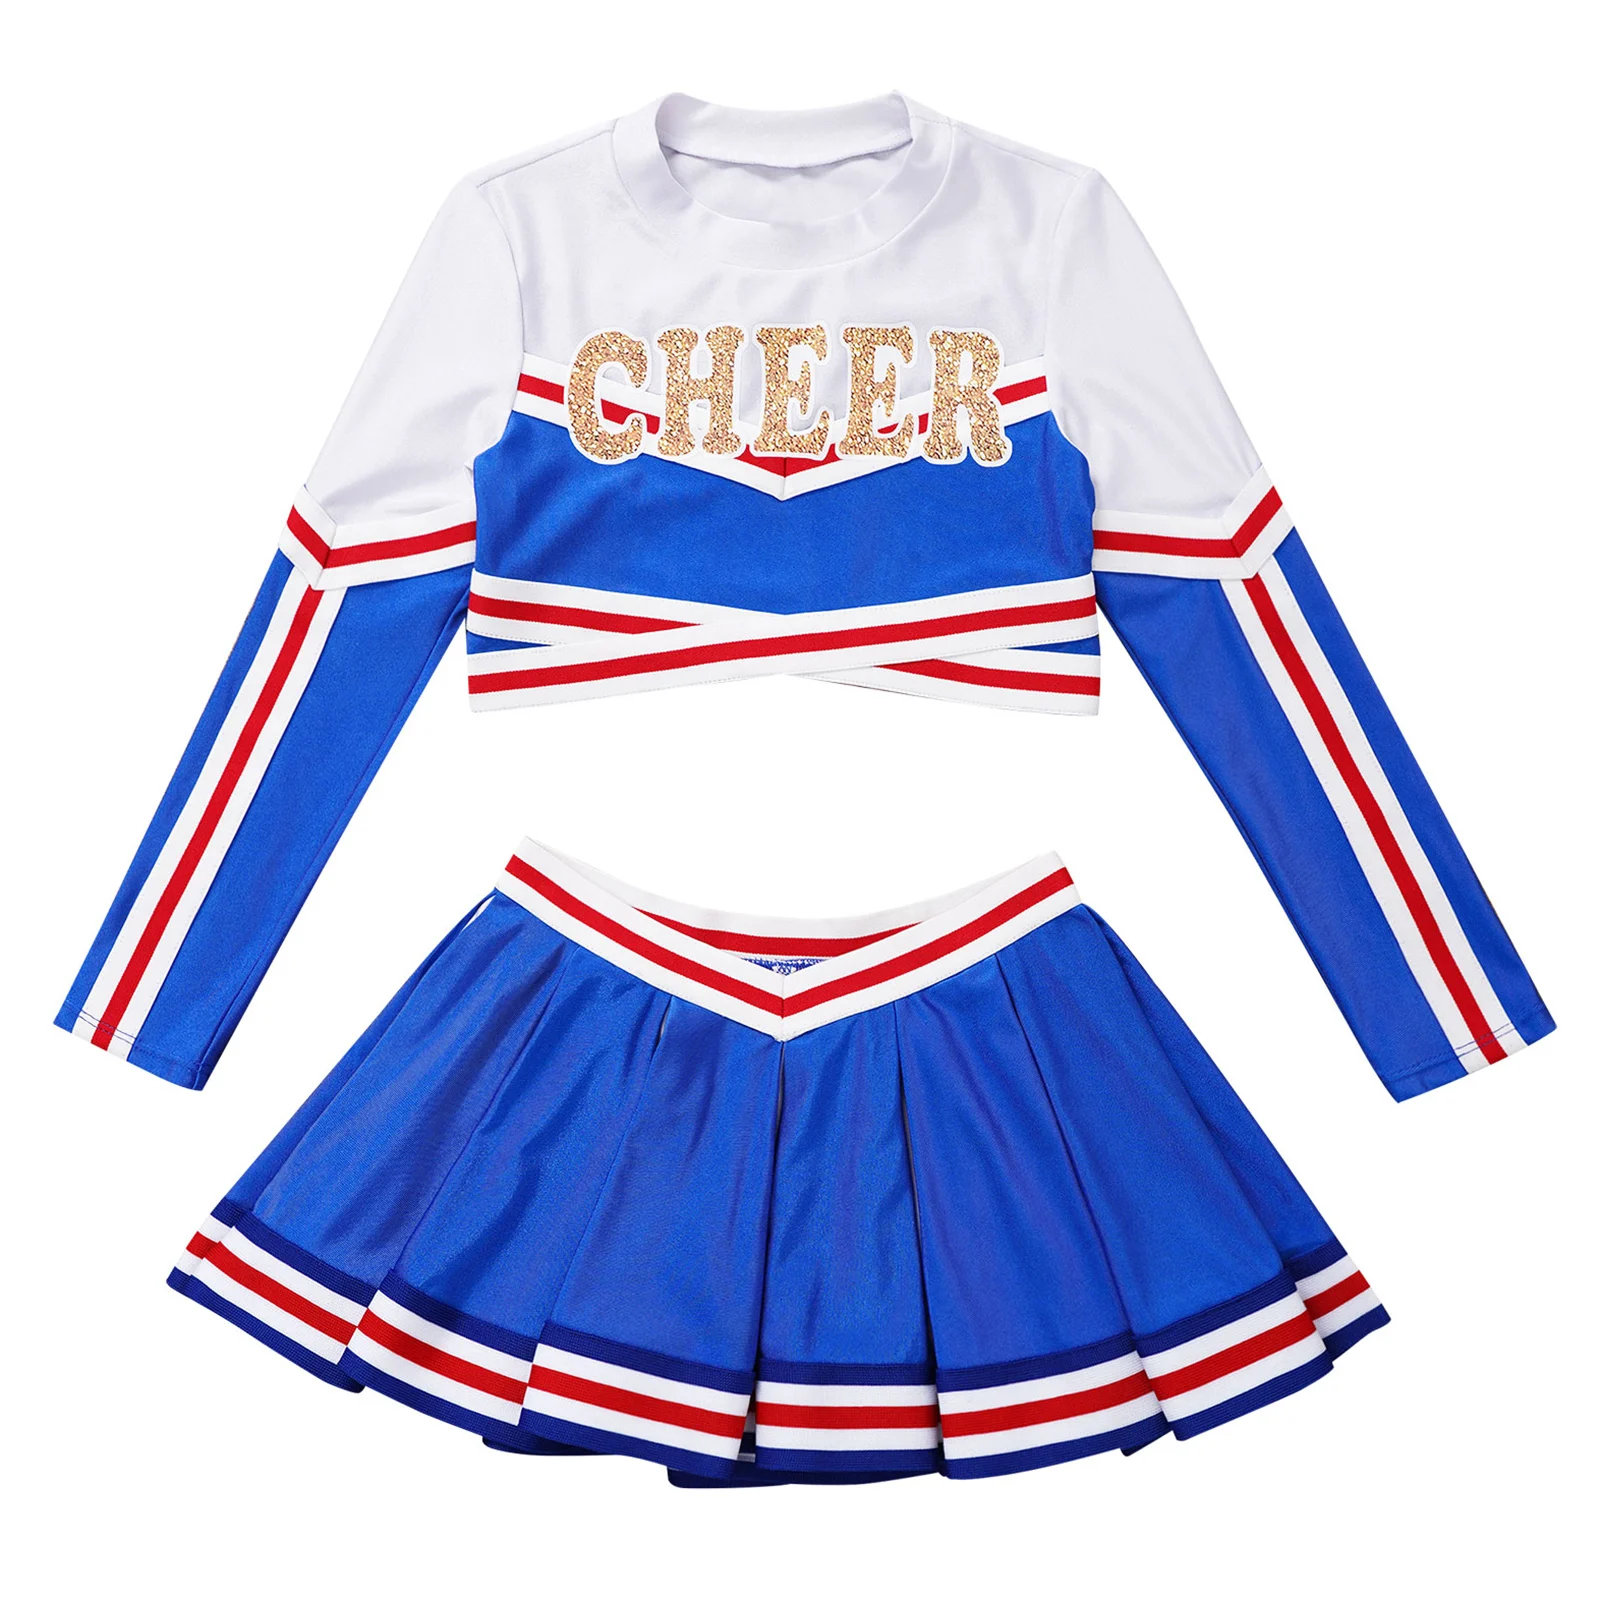 Kids Girls Cheerleader Costumes Uniform Long Sleeve Cheer Printed Crop Top with Pleated Skirt Set Cheerleading Dance Performance